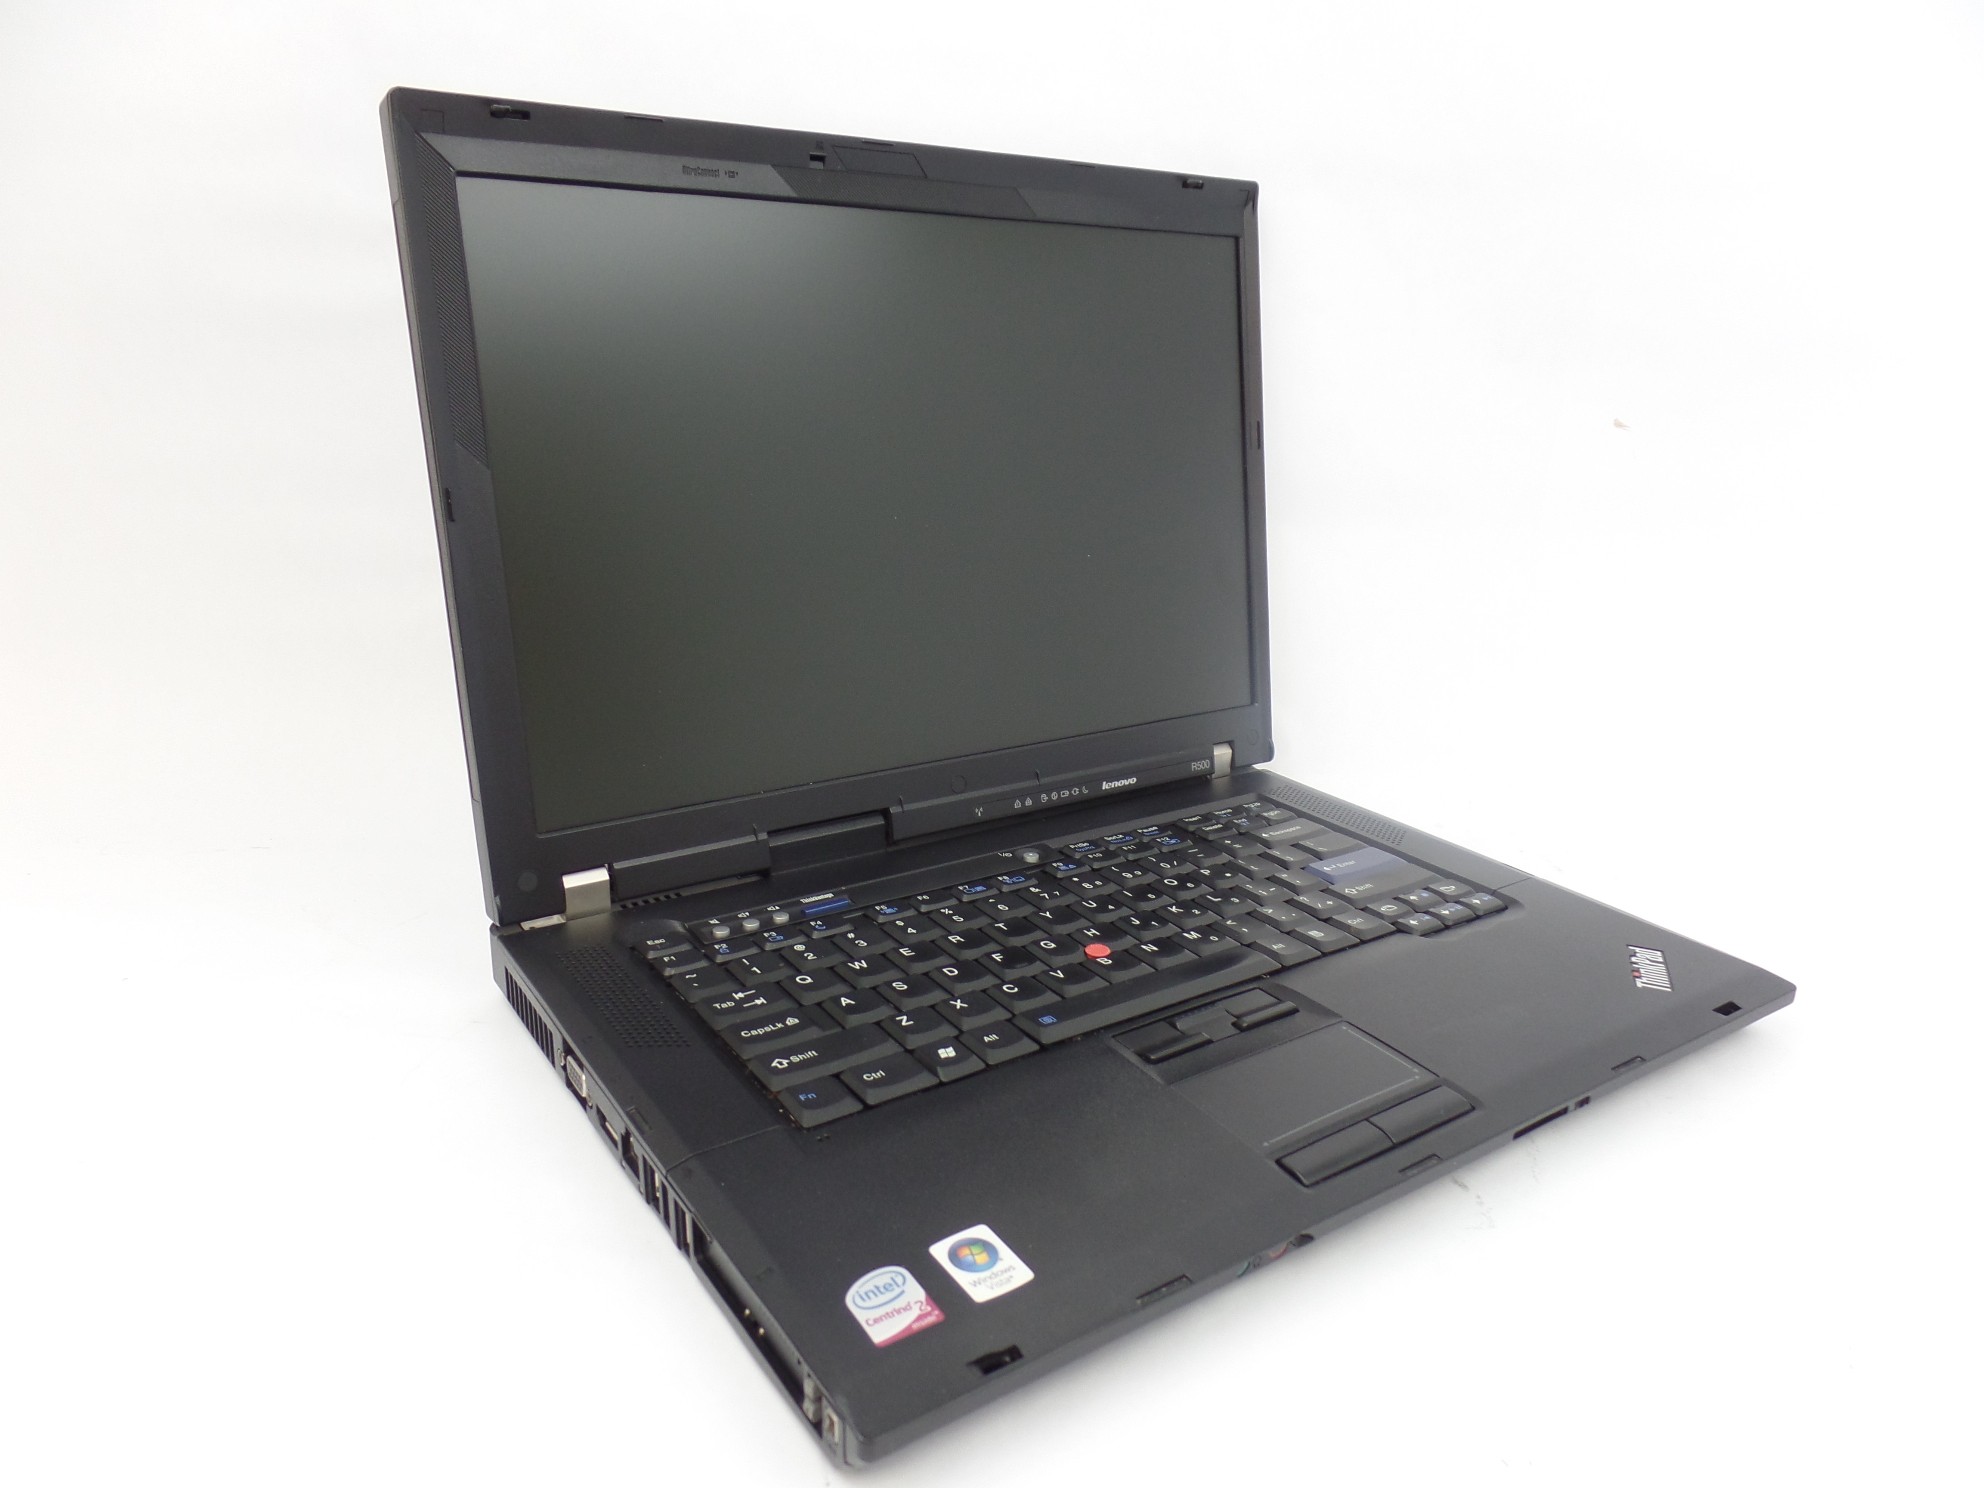 Lenovo ThinkPad R500 15.4" Intel Core2Duo P8600 2GB RAM 160GB HDD Boots to BIOS